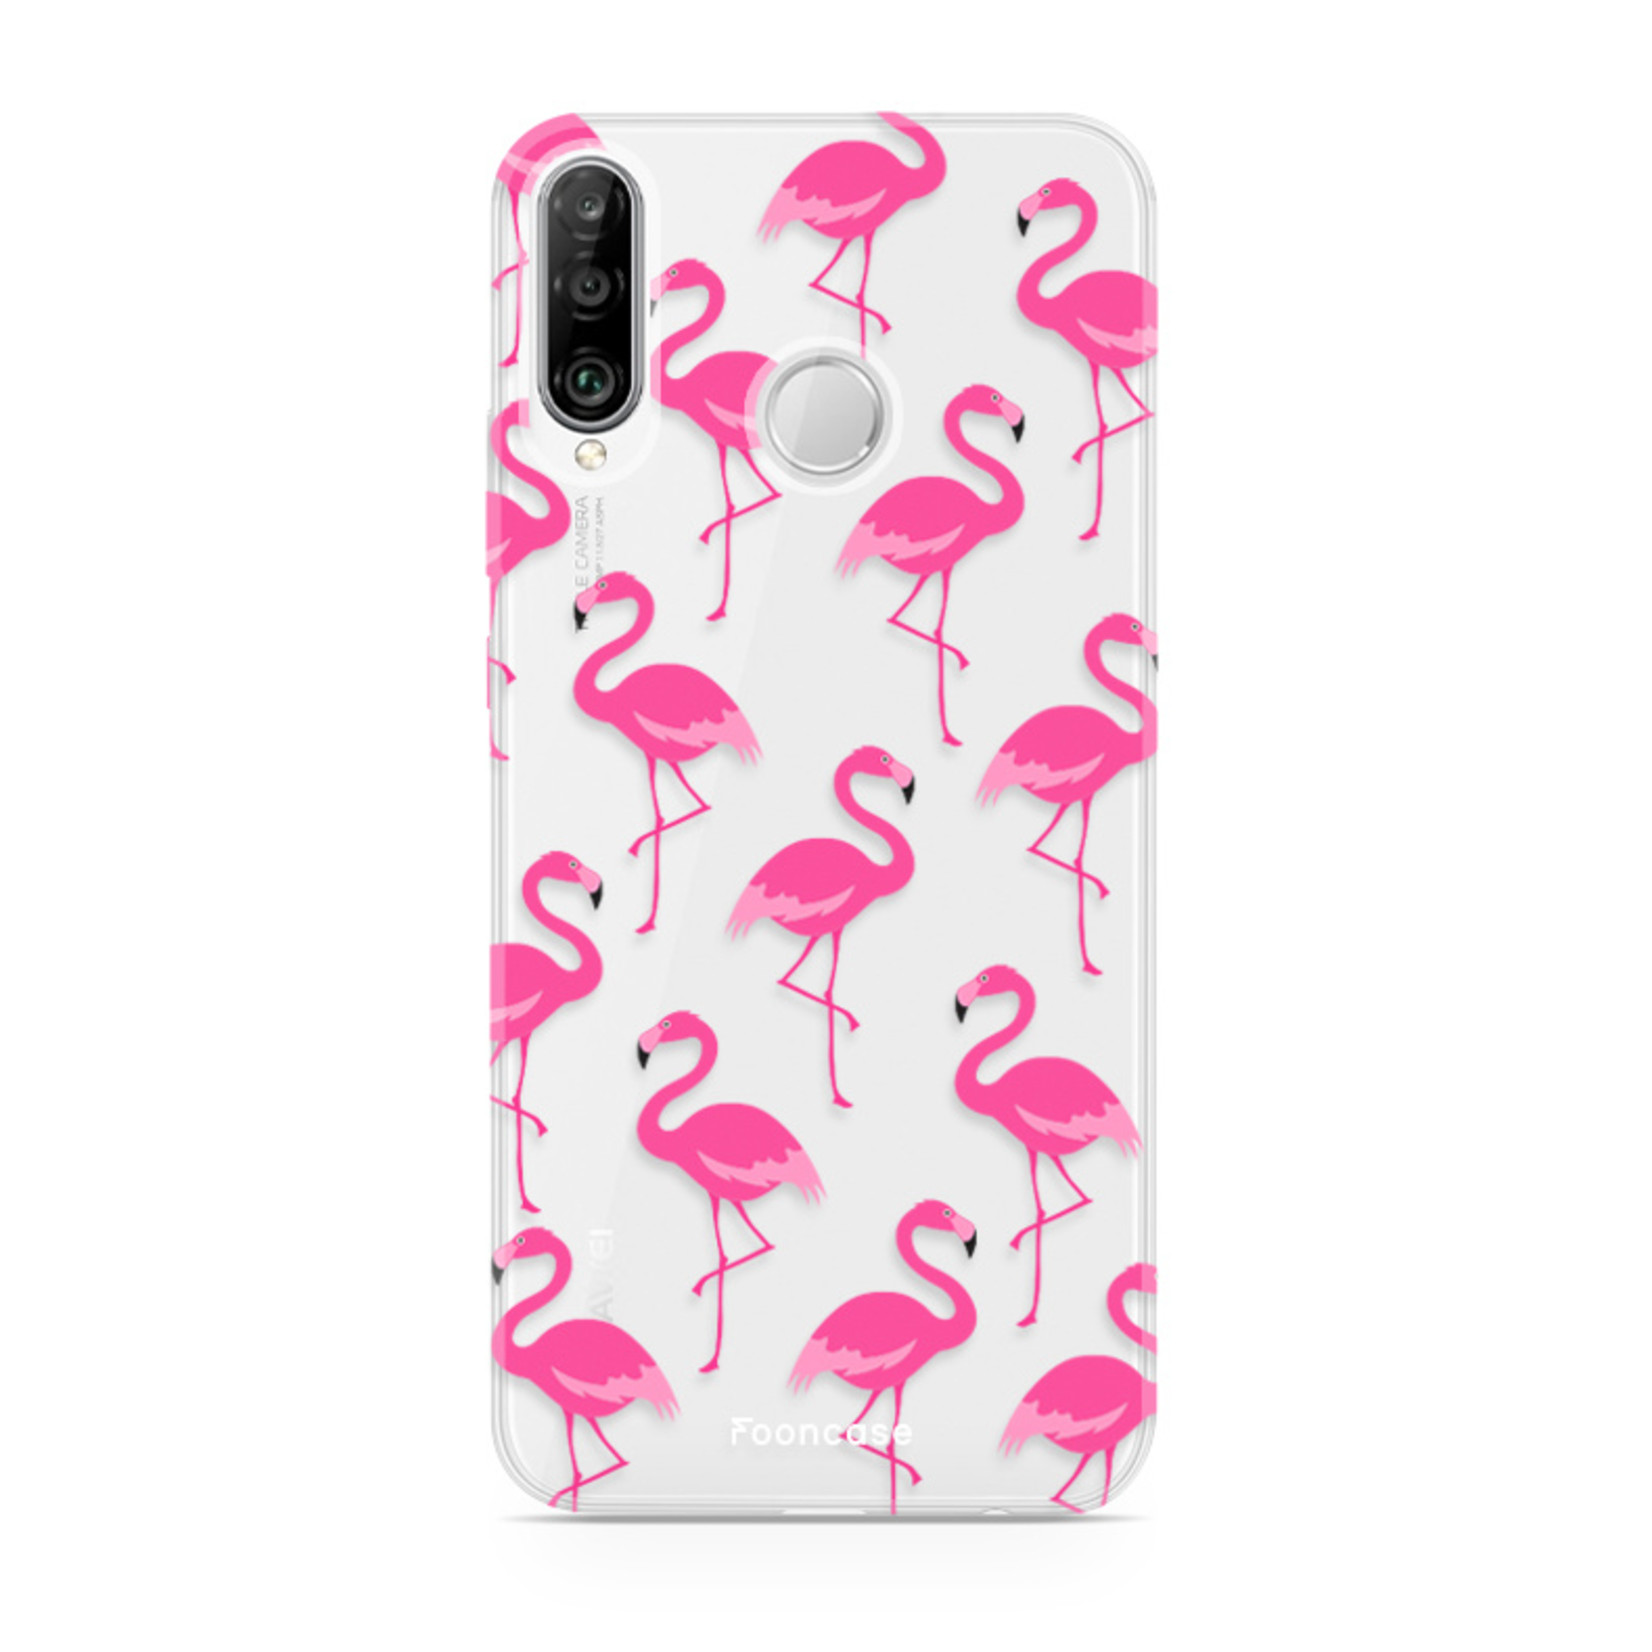 FOONCASE Huawei P30 Lite Handyh√ºlle - Flamingo